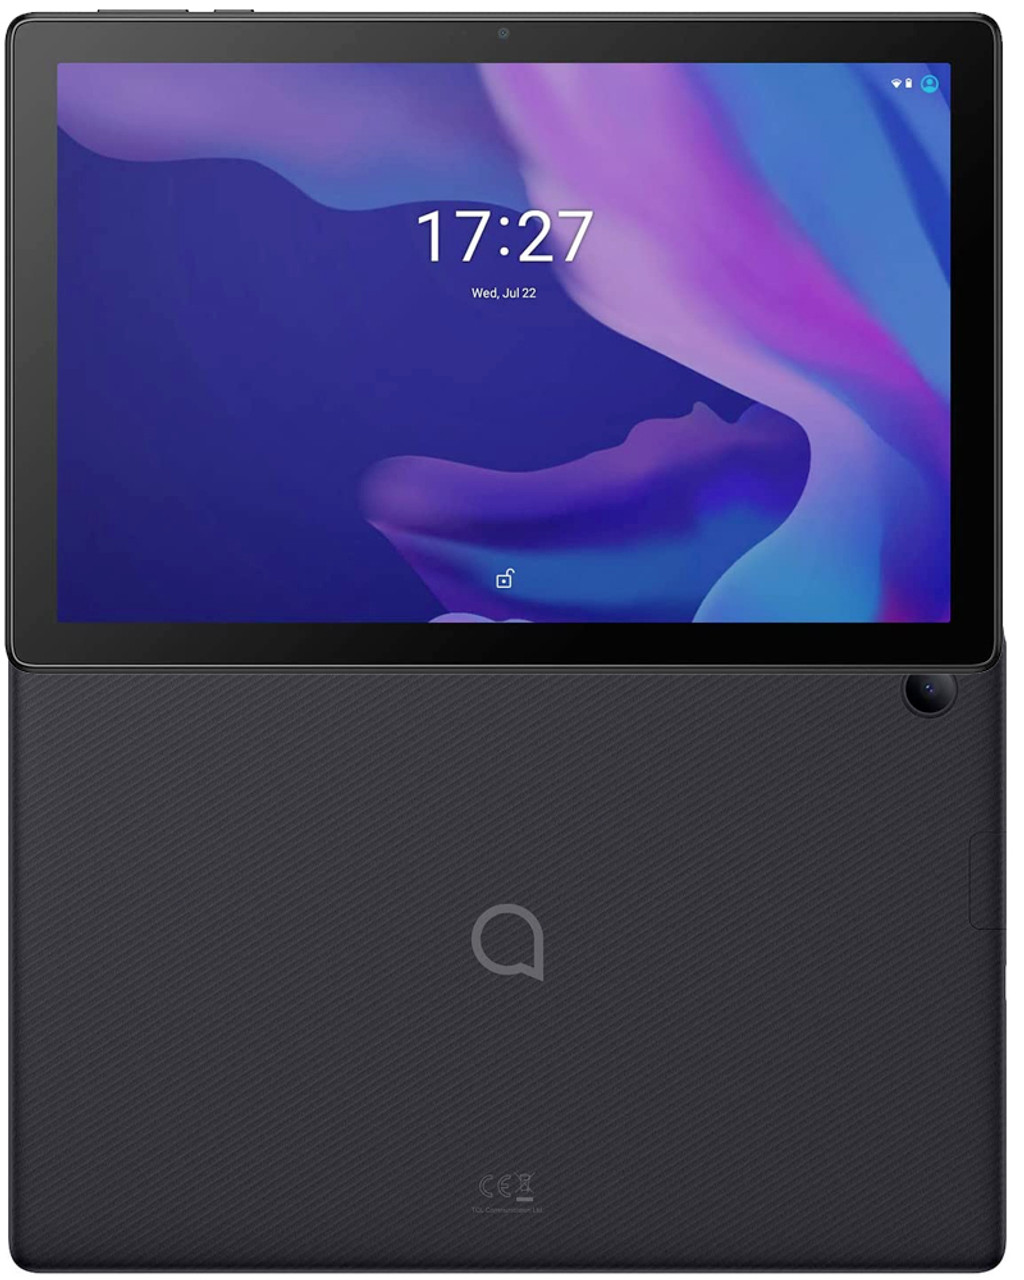 Samsung Galaxy Tab A 10.1 32 GB Wifi Tablet Black (2019)